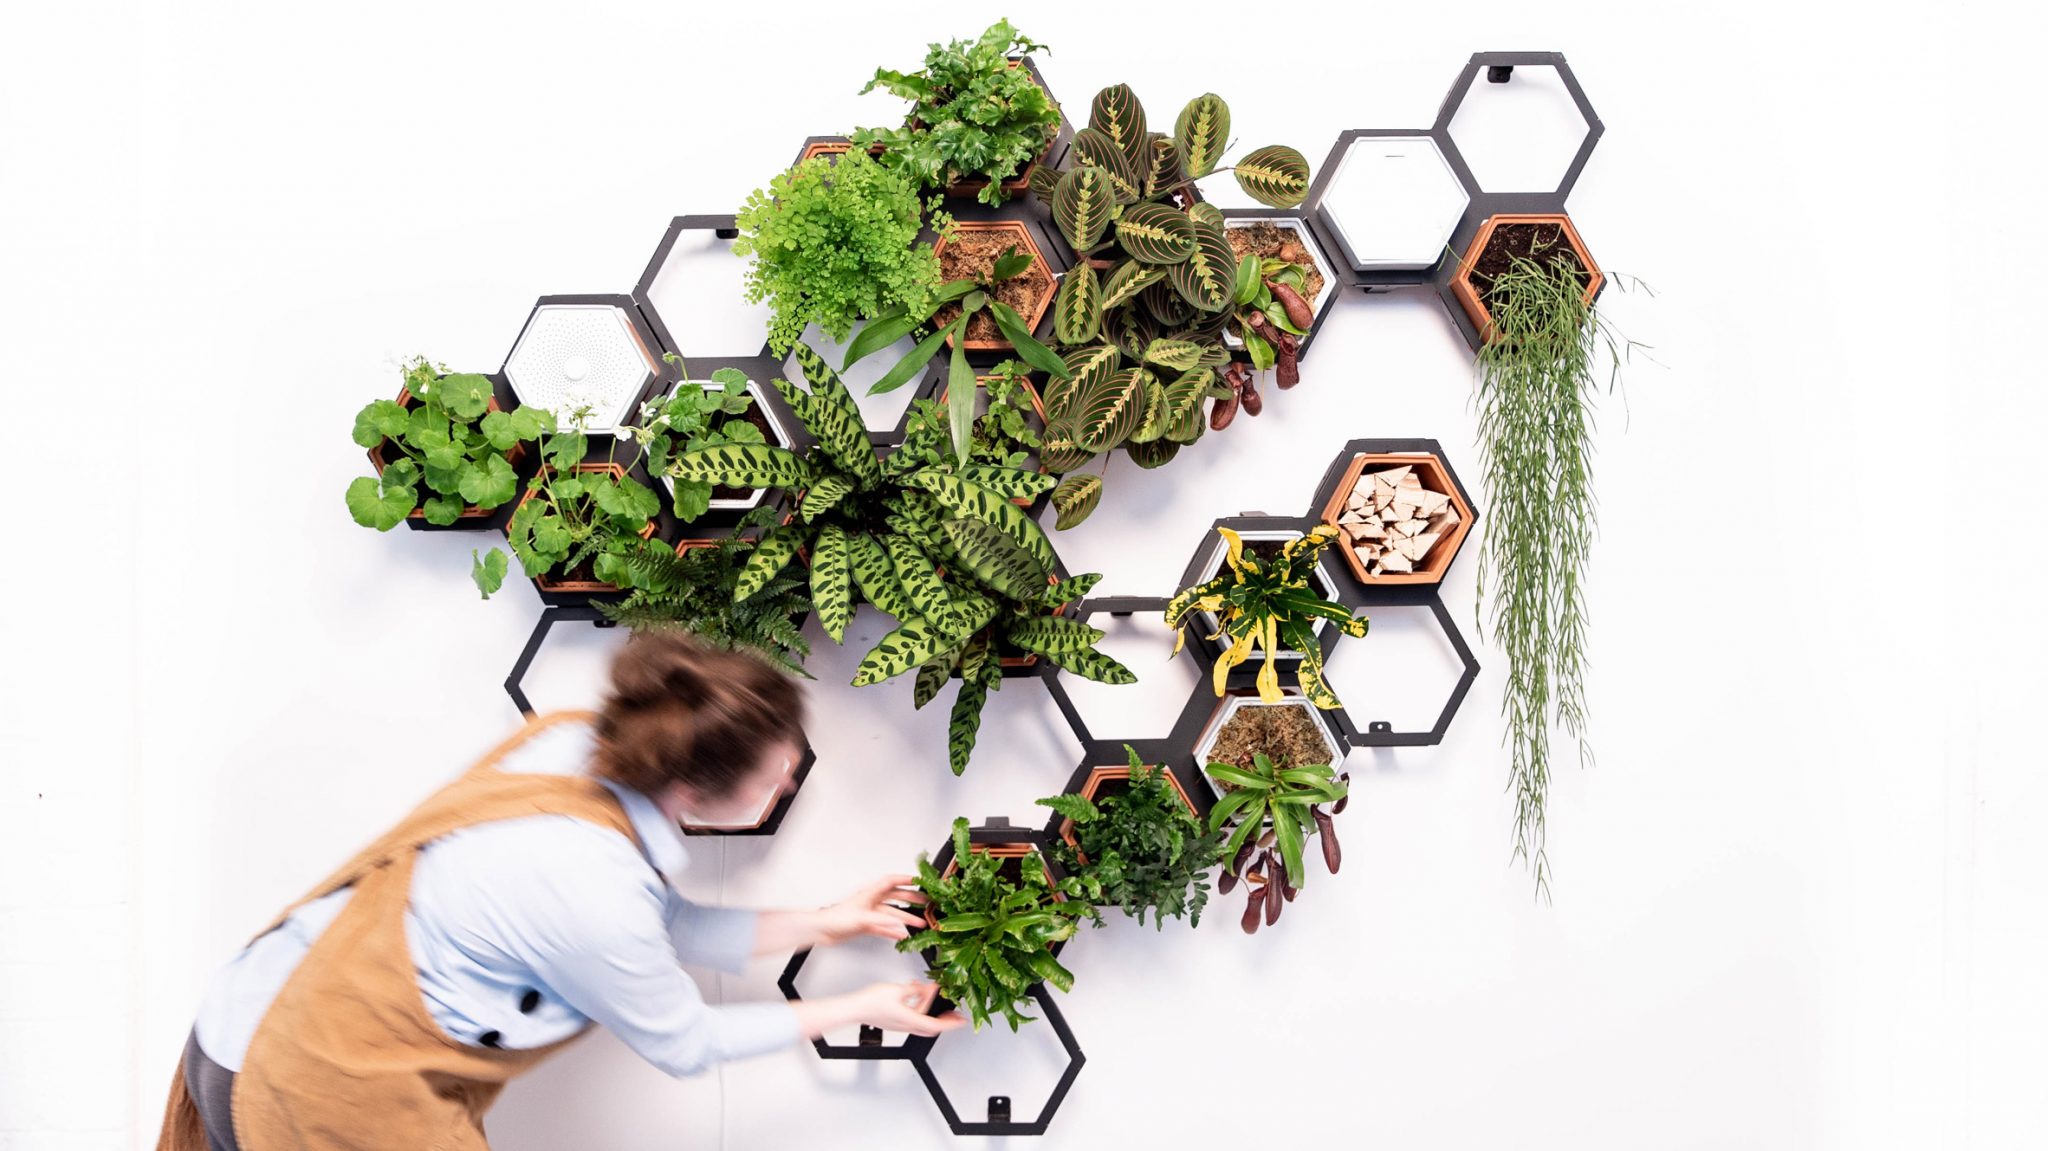 살아있는 식물을 액자처럼 벽에 거는 모듈형 시스템